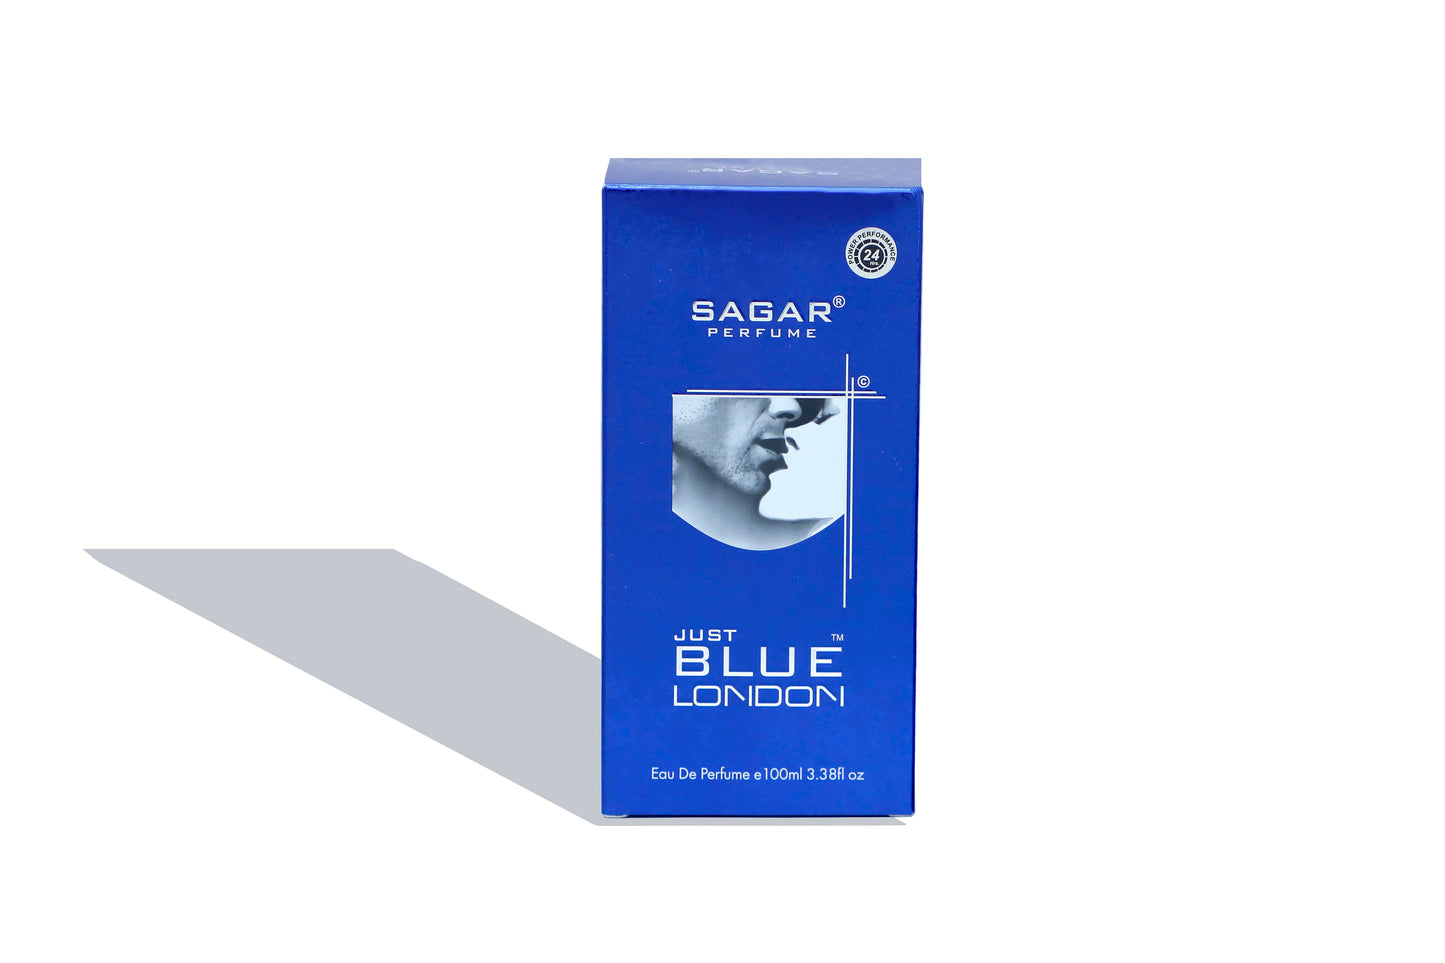 Sagar Just Blue London Deodorant And Perfume Combo